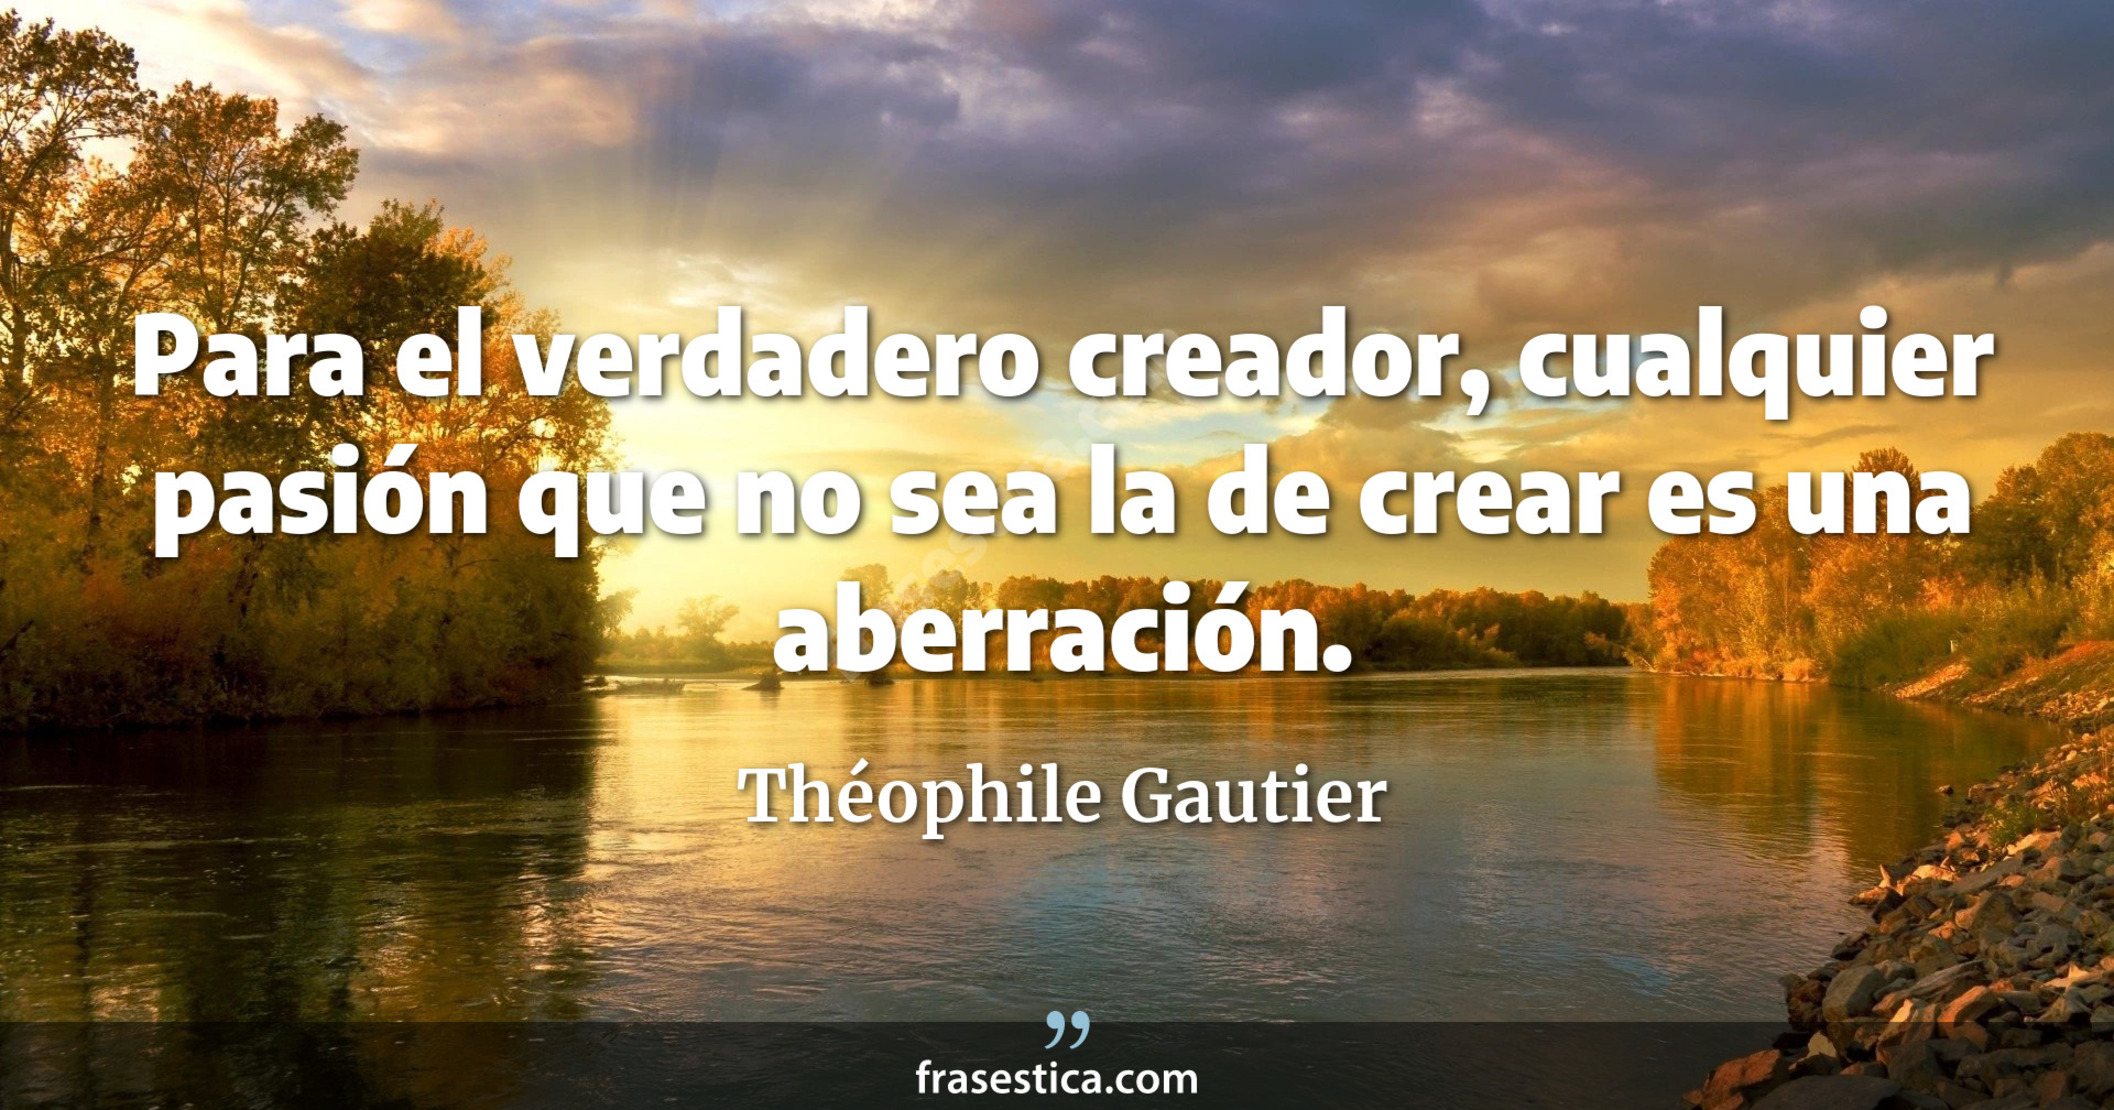 Para el verdadero creador, cualquier pasión que no sea la de crear es una aberración. - Théophile Gautier